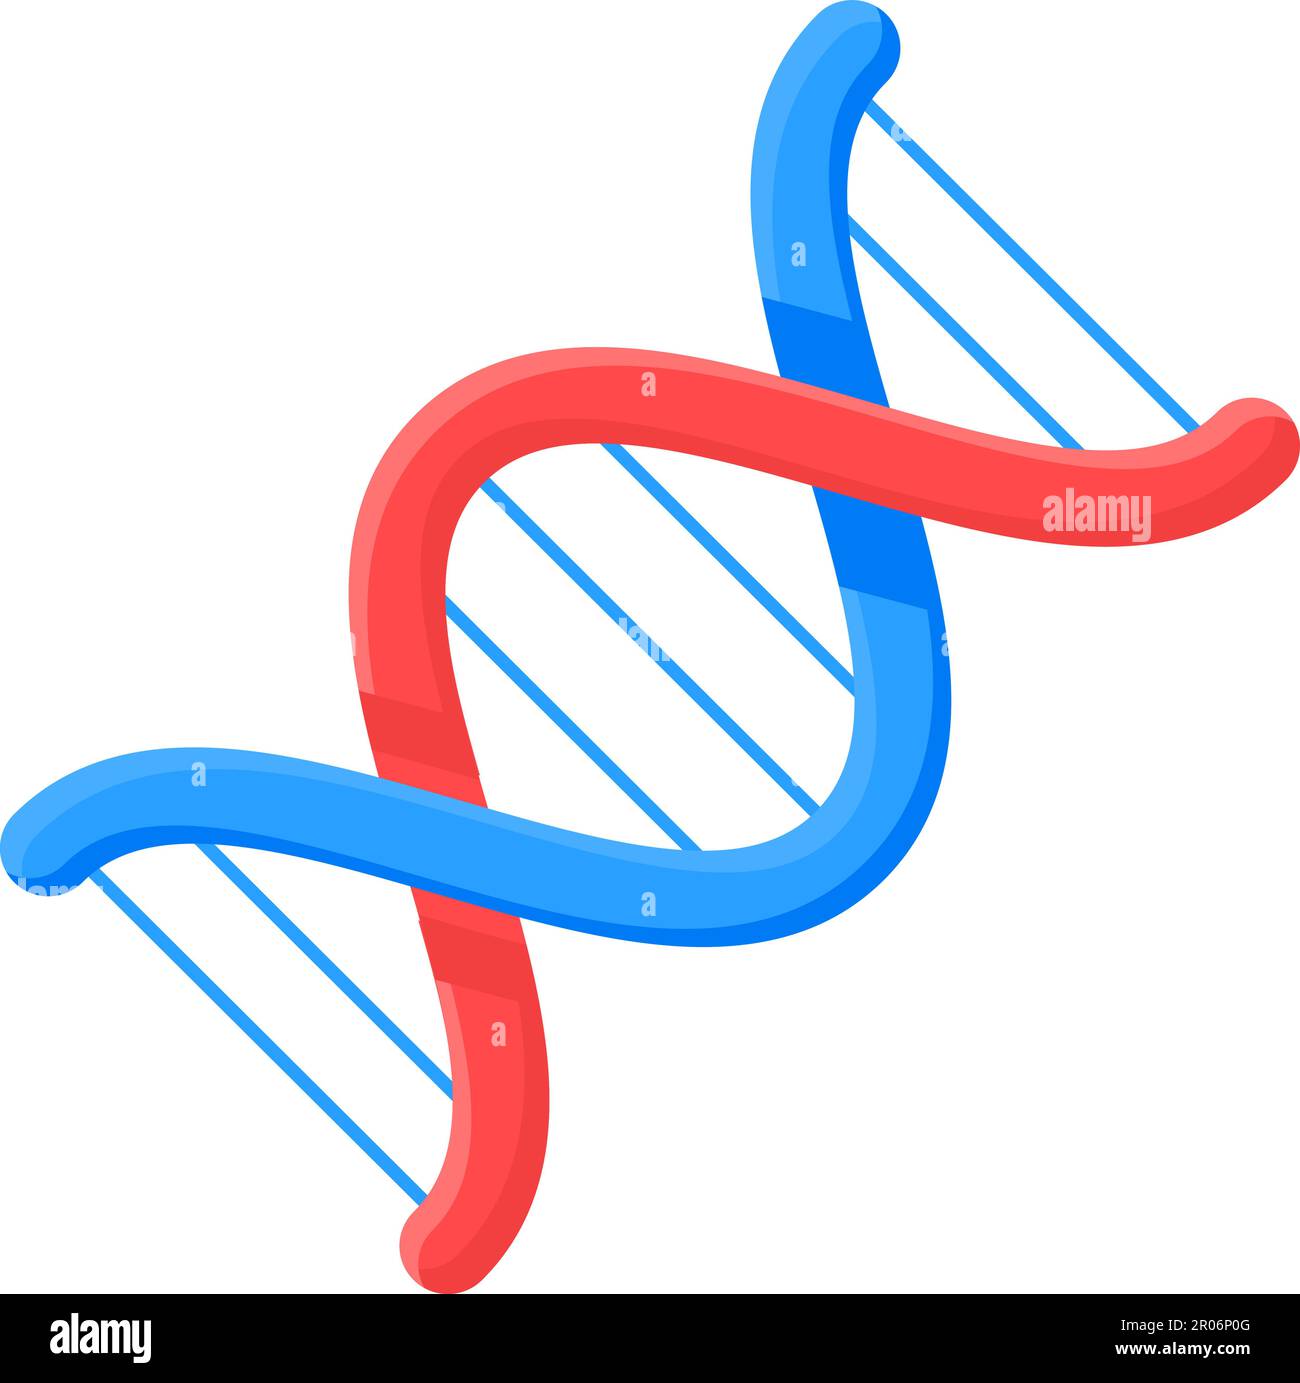 Spiral-DNA-Molekül-verbundene chemische Bindung. Untersuchungen über Struktur und Zusammensetzung von Zellen und Proteinen im biologischen Laboratorium. Einfache, flache Cartoon-Figur Stock Vektor